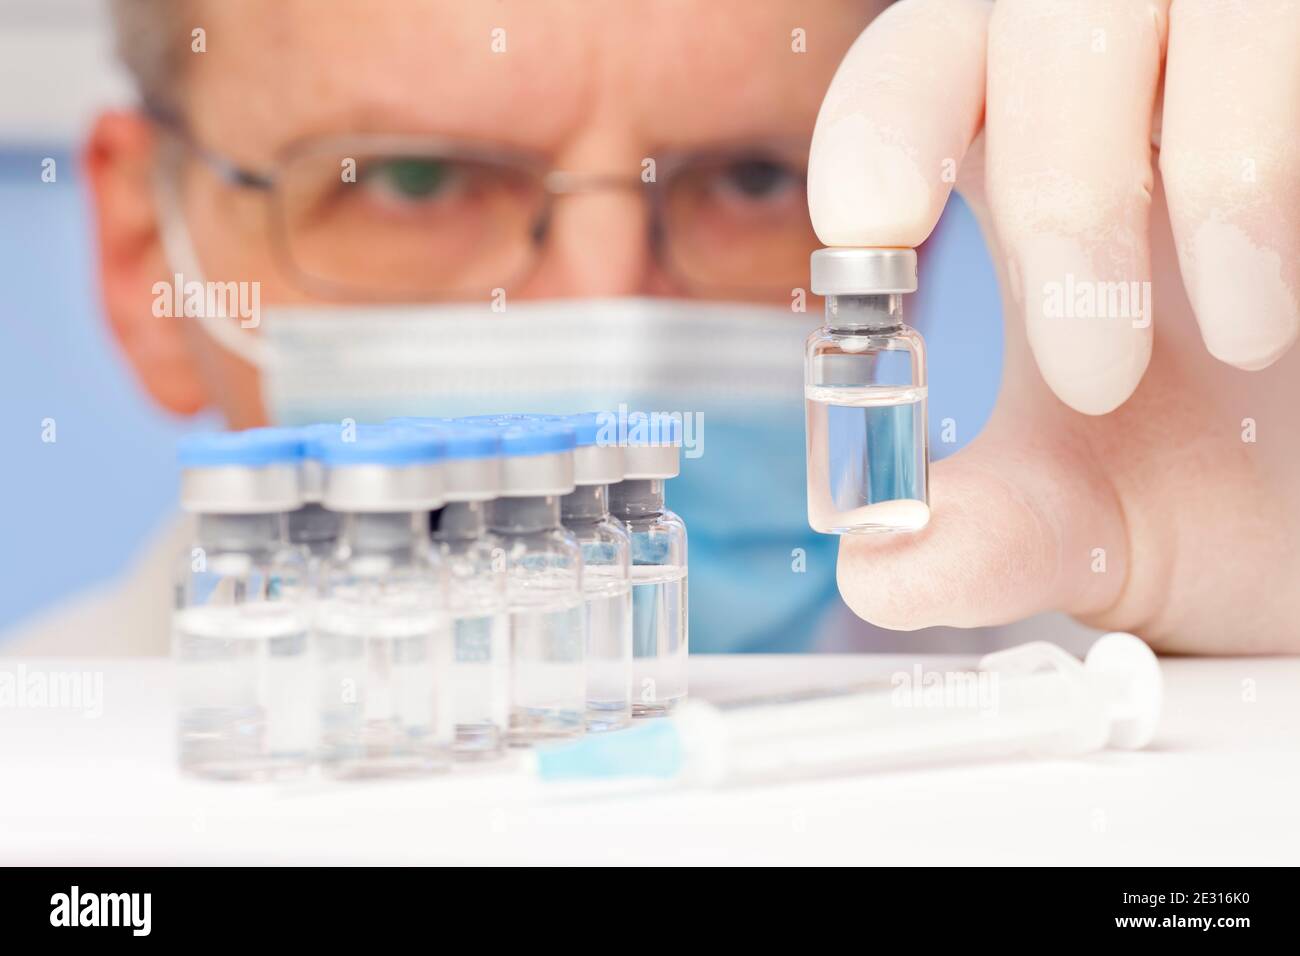 Médecin ou scientifique tenant un flacon contenant un vaccin contre le covid-19 ou la grippe dans sa main - se concentrer sur le flacon Banque D'Images